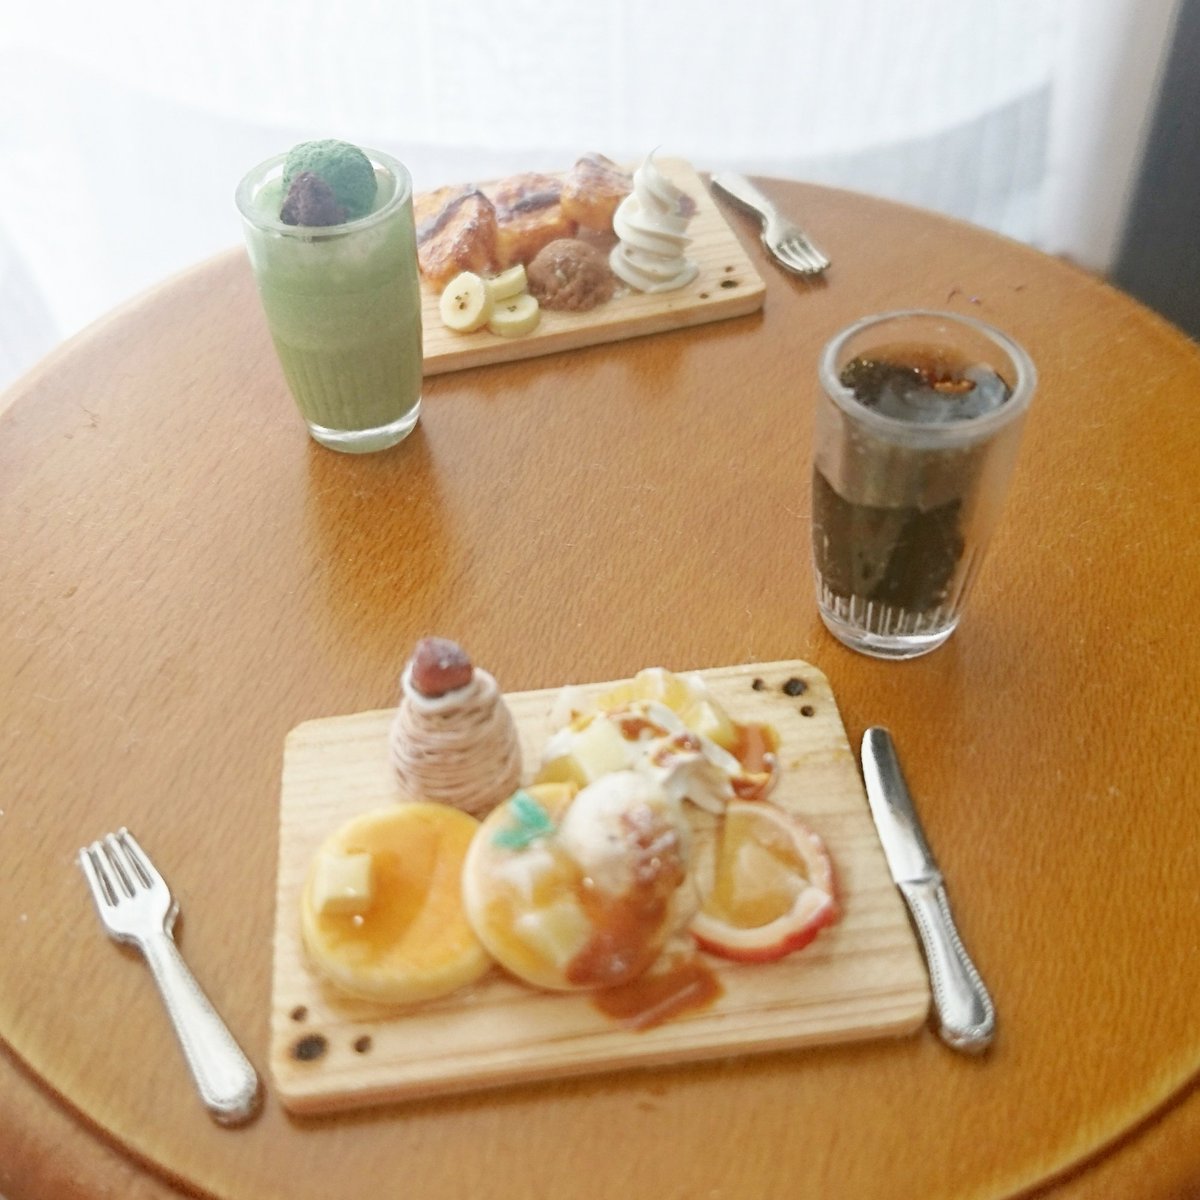 Misaki Miniature A Twitter ミニチュアのパンケーキとフレンチトーストです Abcクラフトのフェイクスイーツマルシェで展示していただいております フェイクスイーツ フェイクスイーツマルシェ ミニチュアフード パンケーキ フレンチトースト